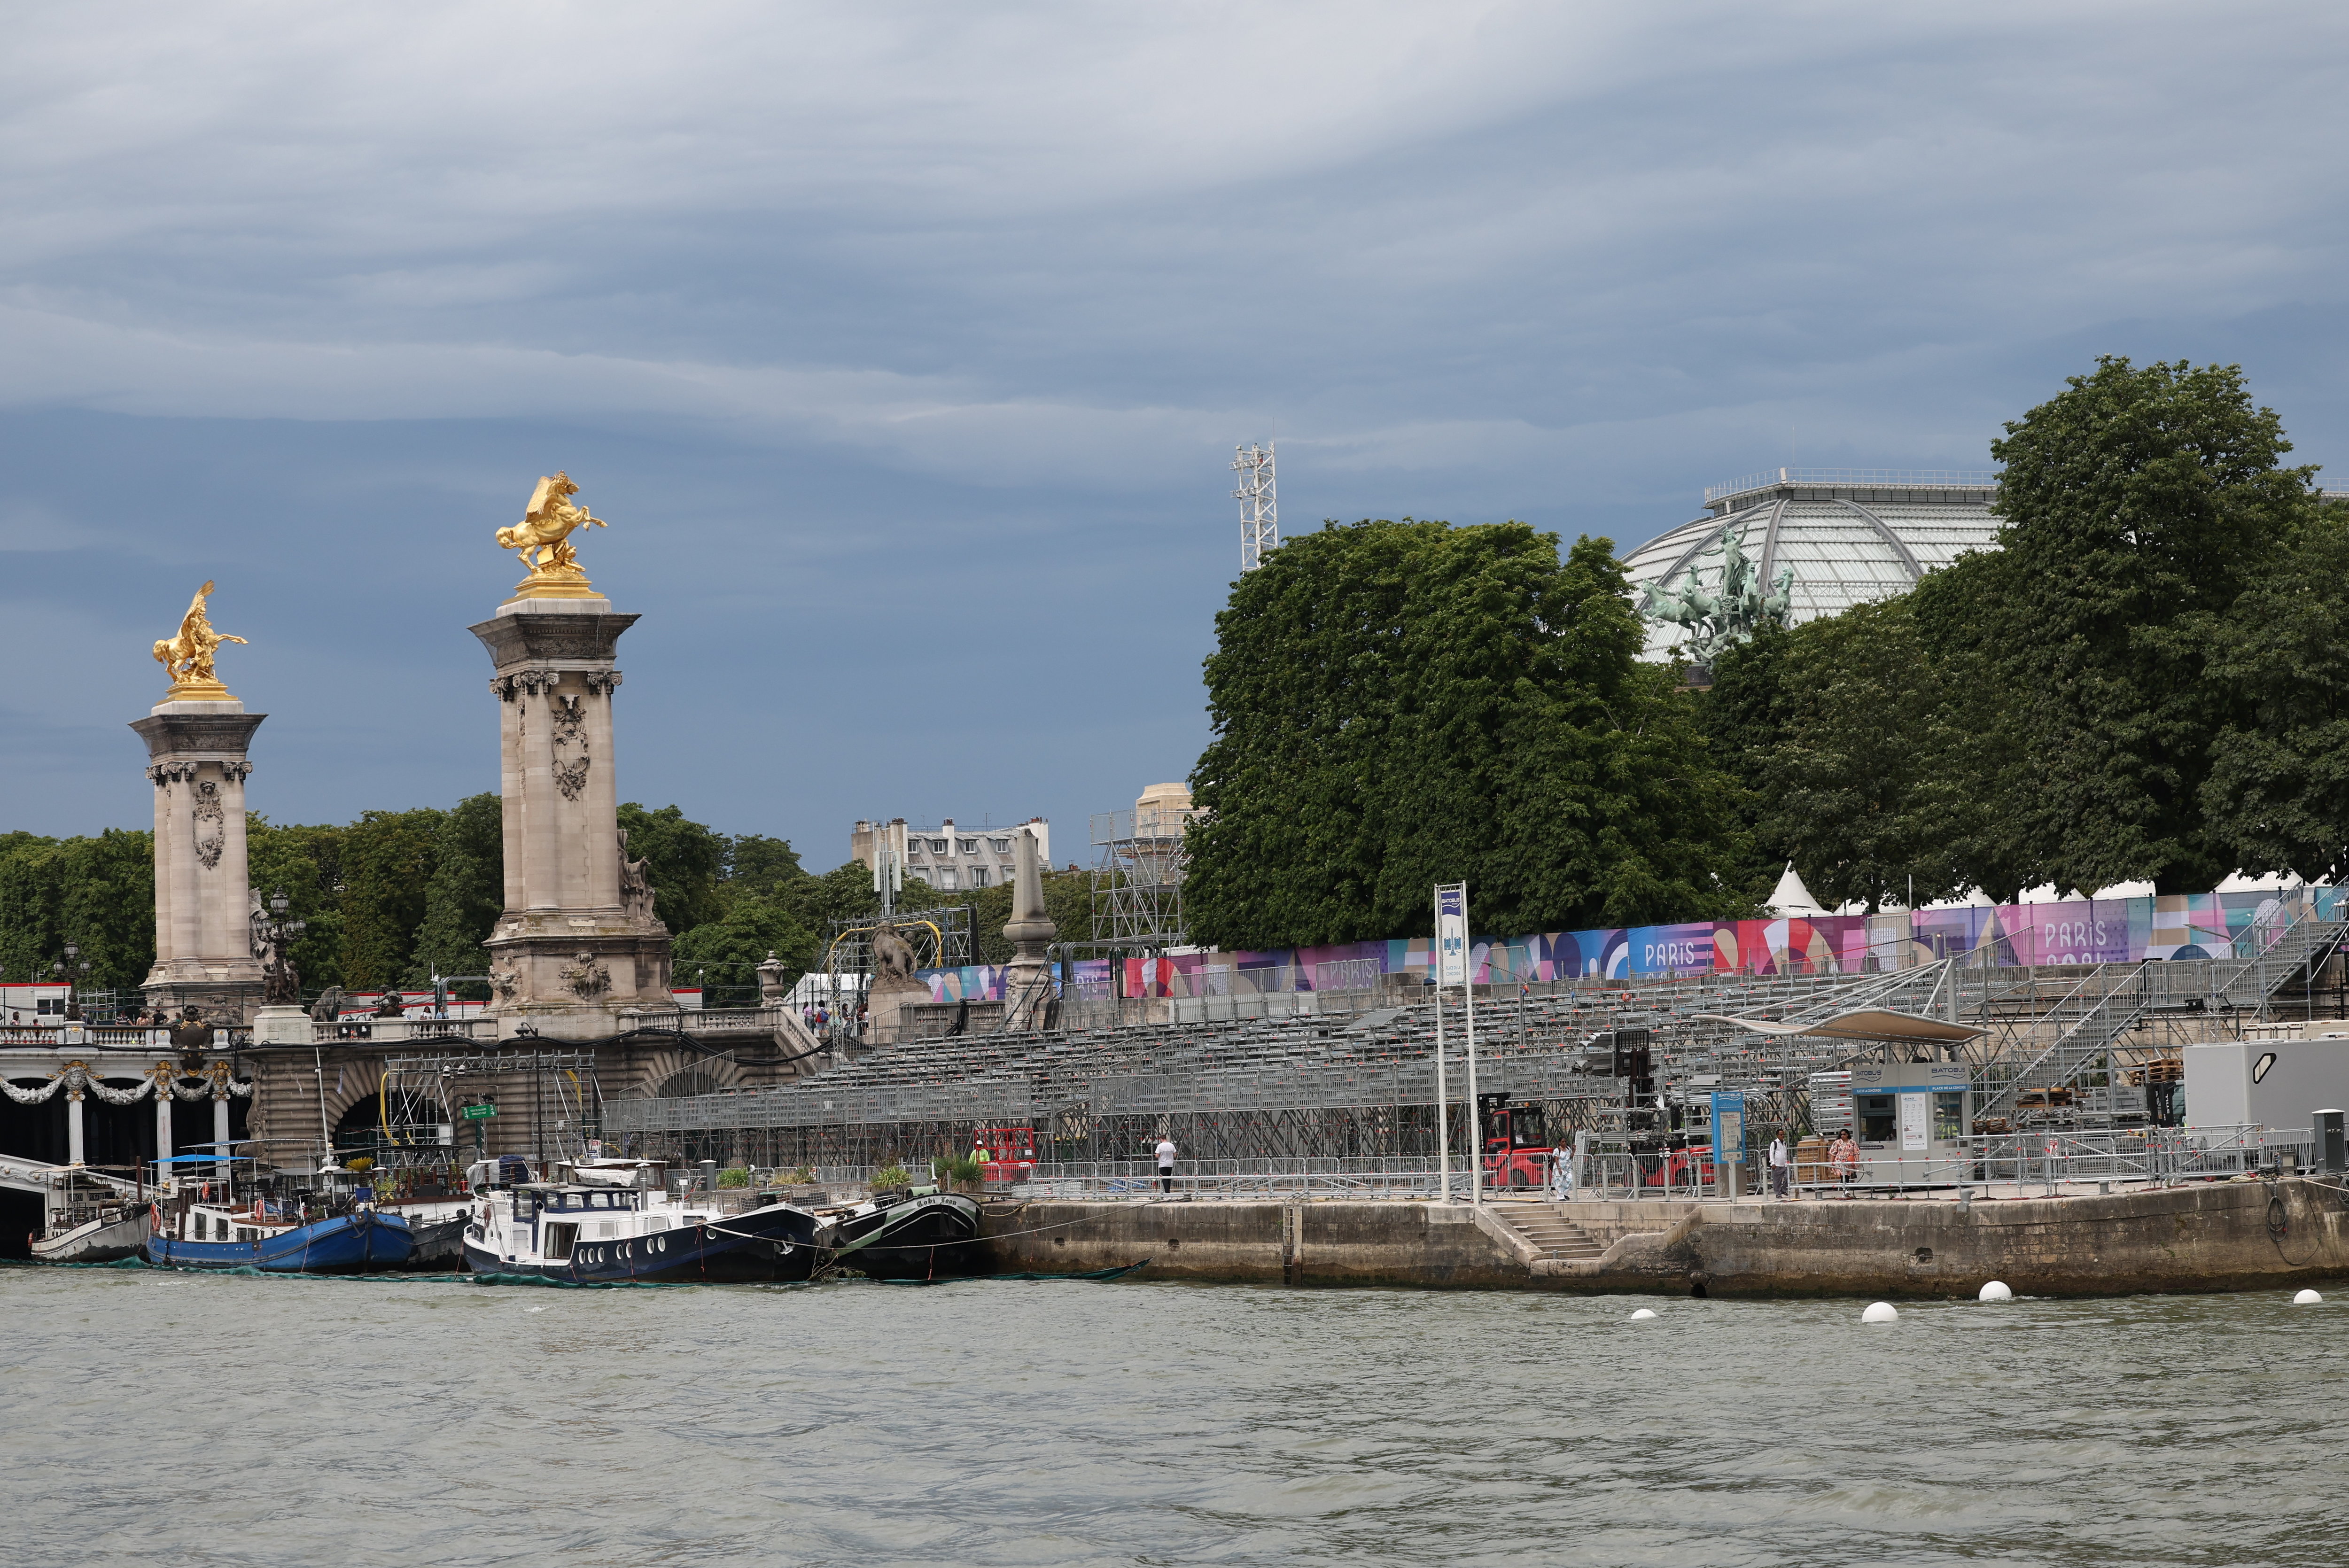 En cette mi-juillet, les tribunes et infrastructures sont en cours d'installation sur les quais de Seine à Paris pour la cérémonie d'ouverture des JO, rendant inaccessibles les berges. LP/Arnaud Journois